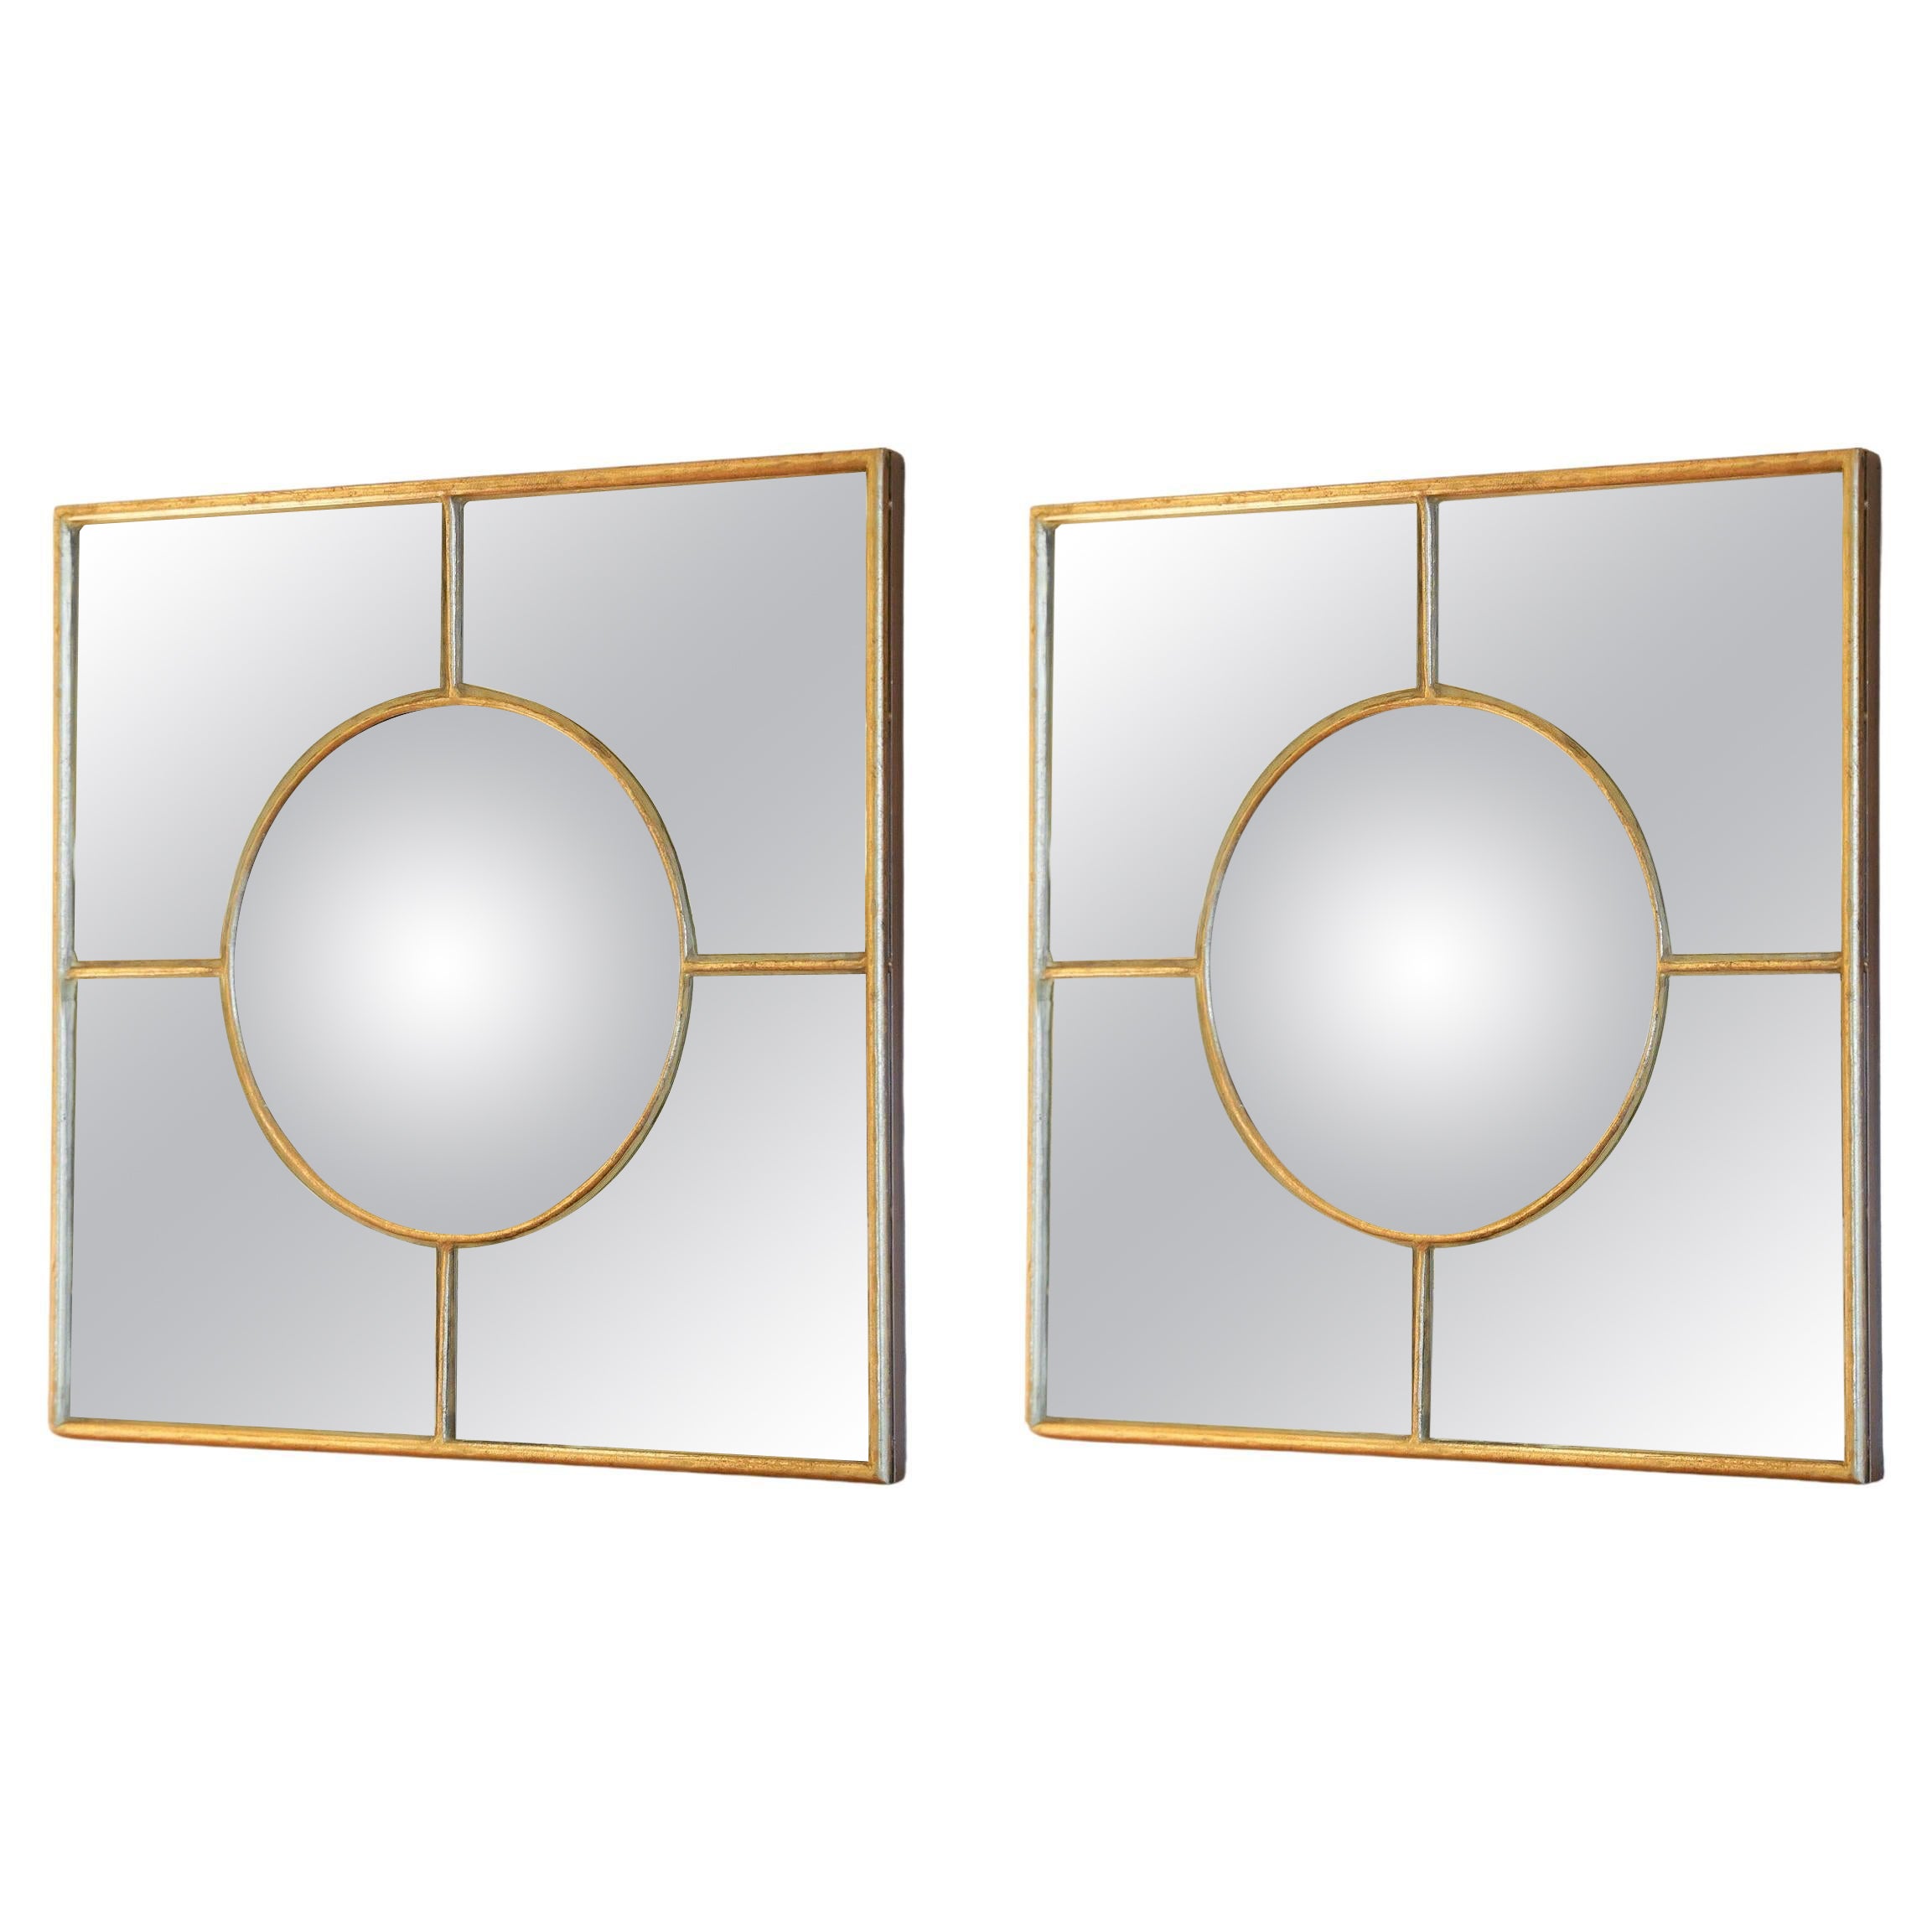 Schönes Paar vergoldeter Holzspiegel.

Bestehend aus einem vergoldeten Holzrahmen, der ein Quadrat bildet.
Im Inneren des Rahmens befindet sich ein Hexenspiegel in der Mitte, eingerahmt von 4 kleinen Spiegeln, die den Hexenspiegel unterstreichen,